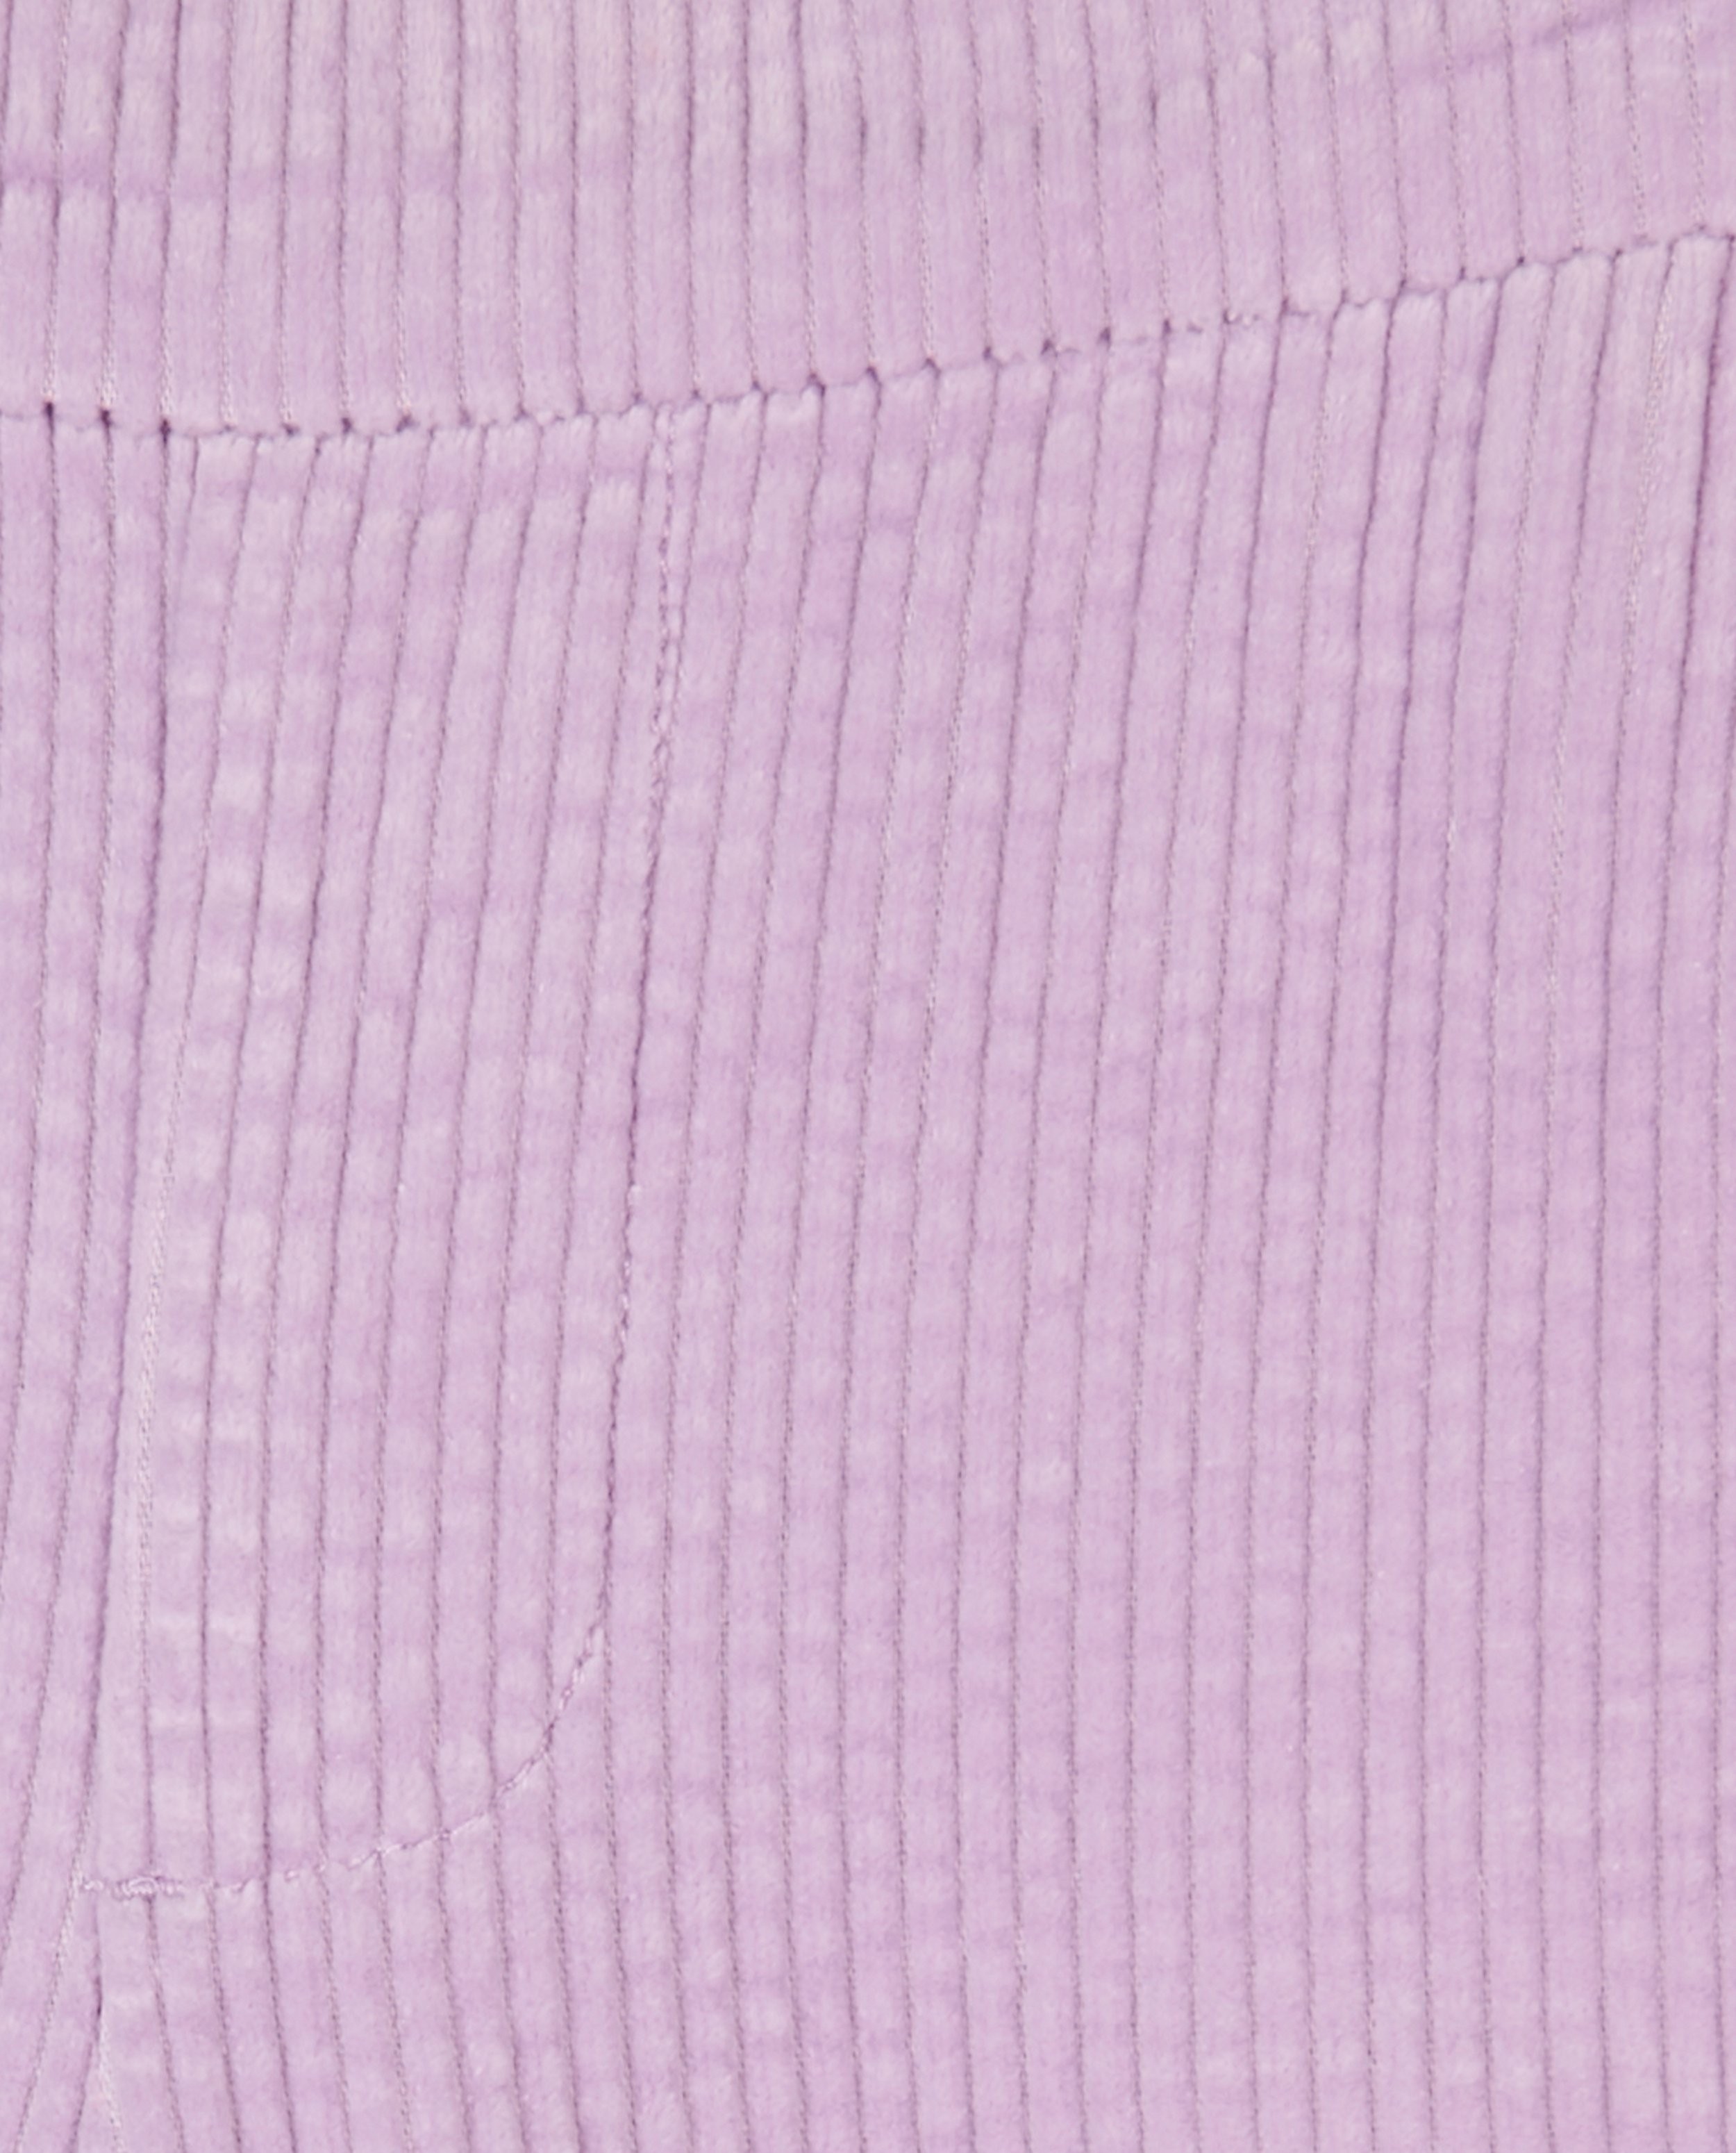 Pantalons - Pantalon lilas en velours côtelé CKS